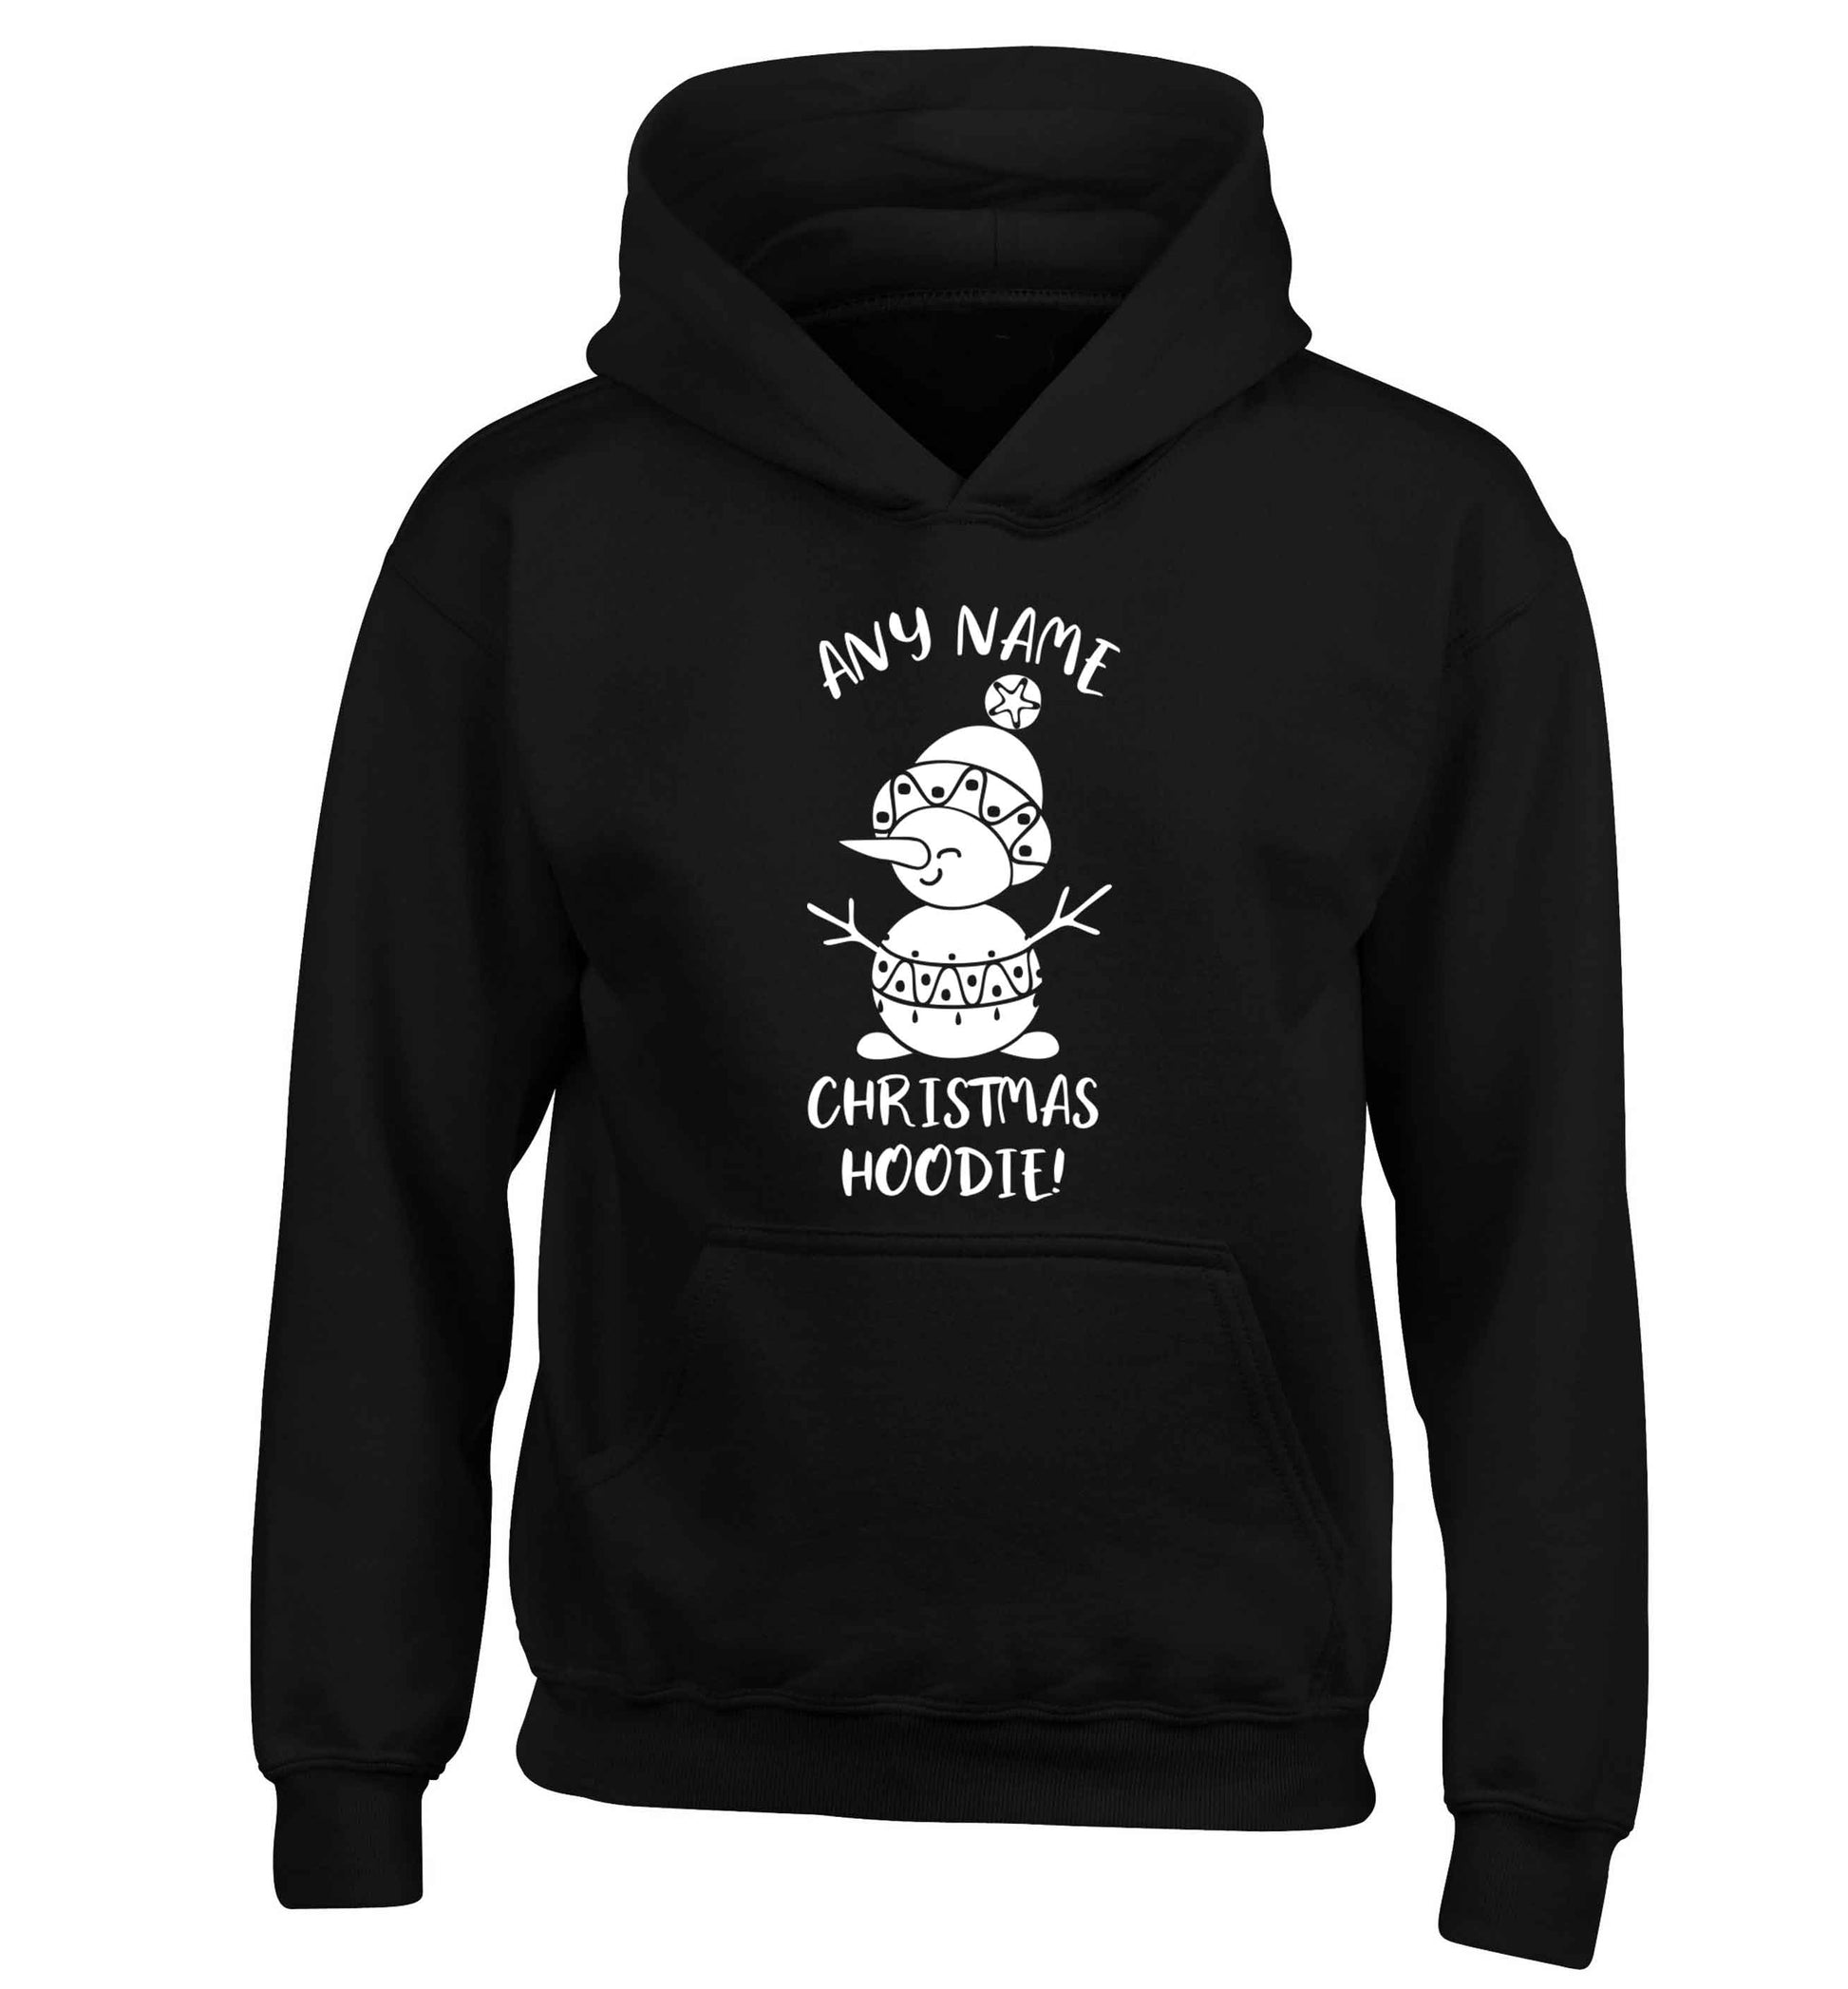 Personalised Christmas hoodie any name children's black hoodie 12-13 Years